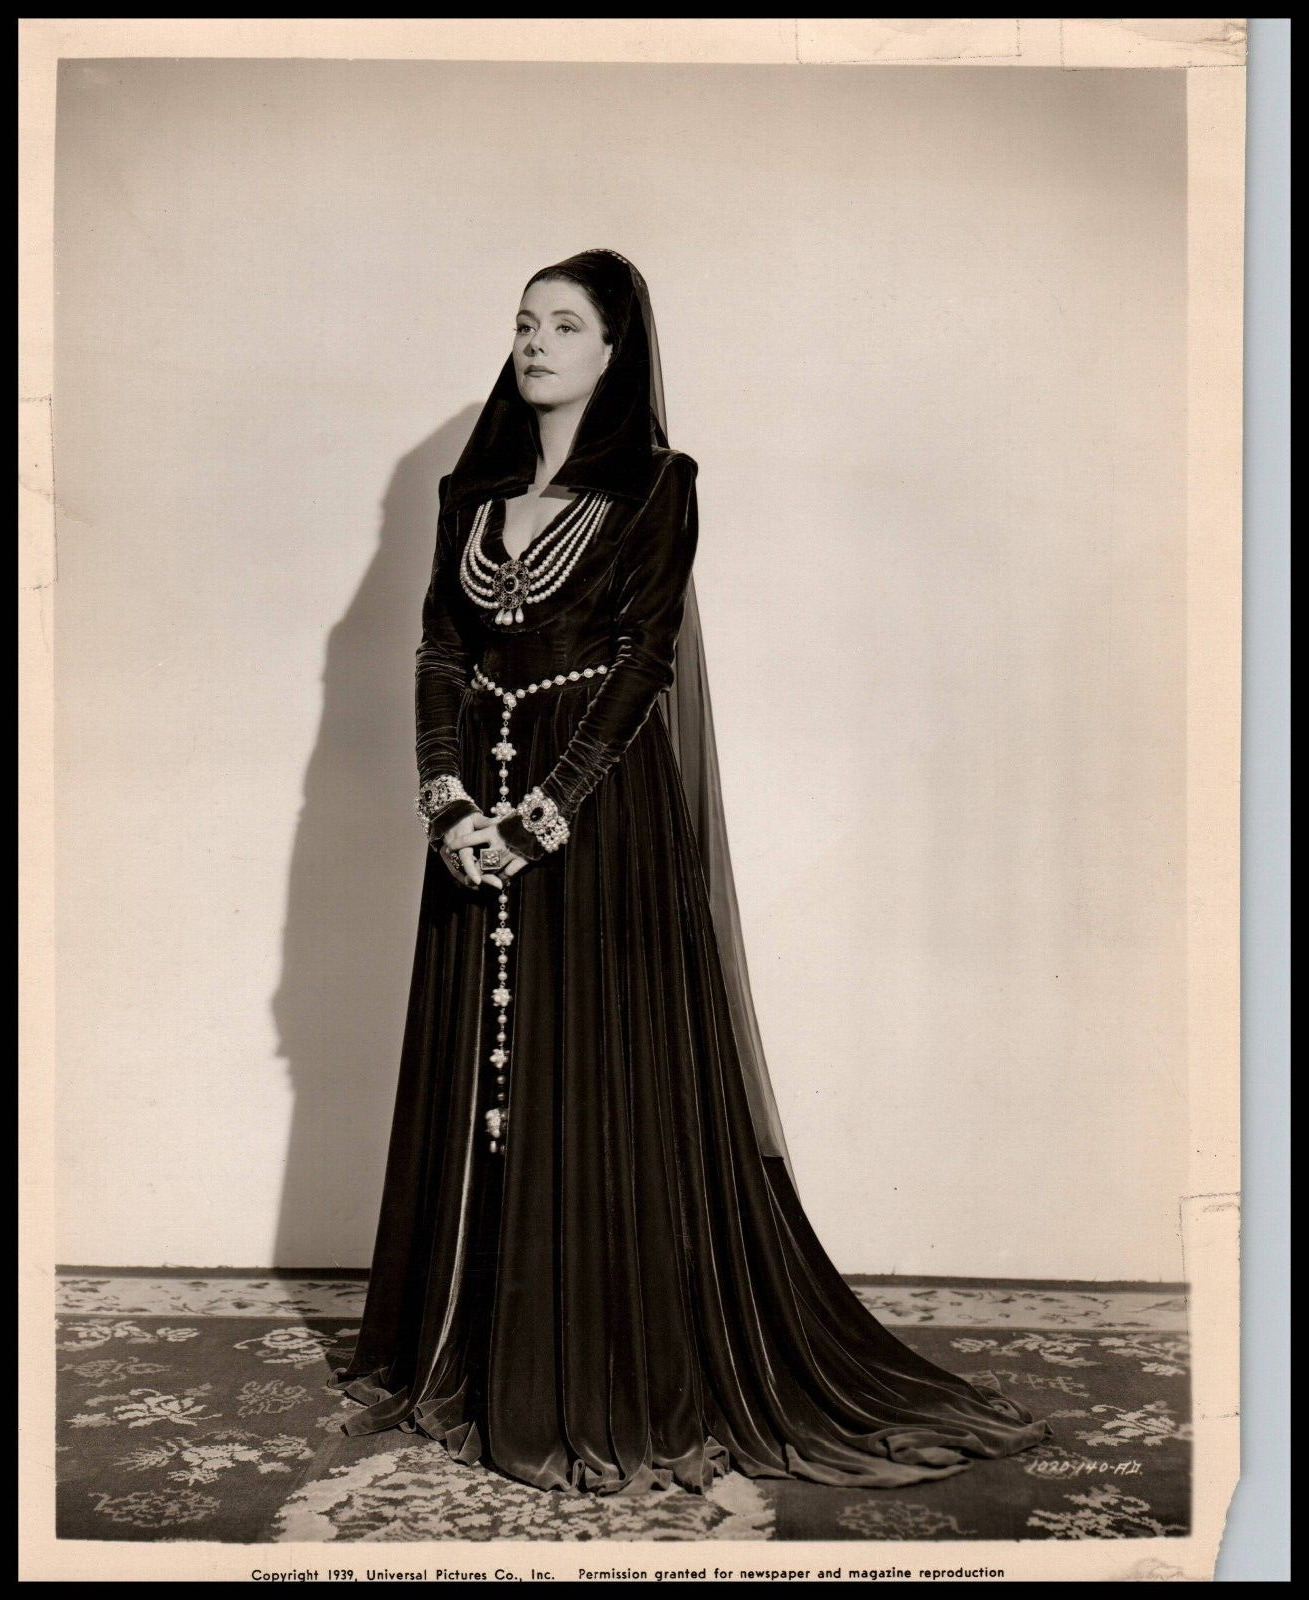 Hollywood Beauty BARBARA O'NEIL 1939 STUNNING PORTRAIT STYLISH POSE Photo 651